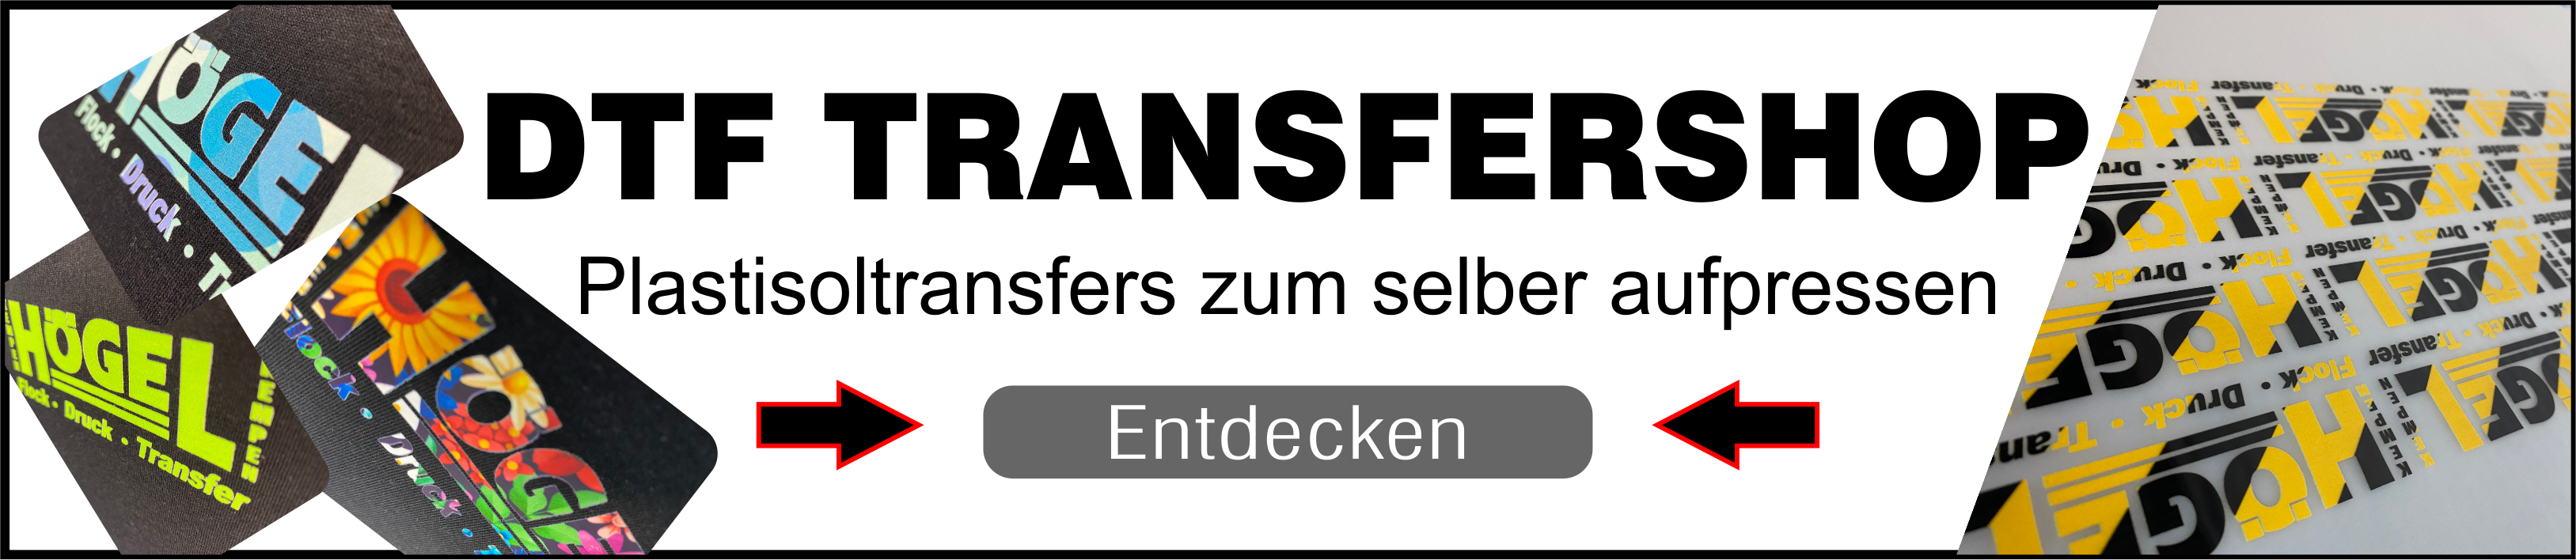 DTF Transfershop Banner